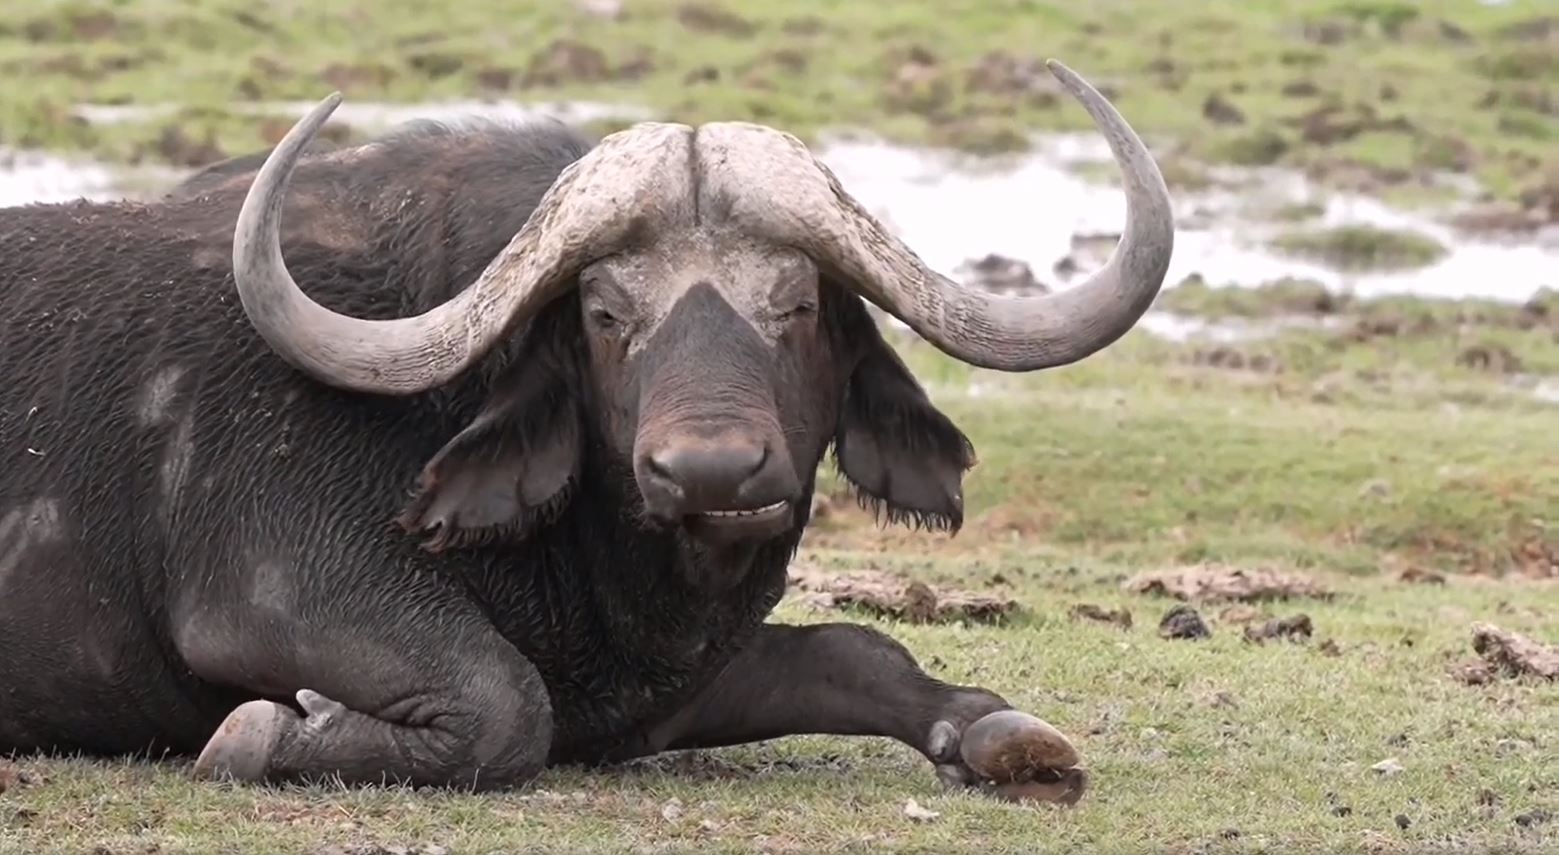 Wir sind heute von Nairobi zum Lake Amboseli Nationalpark gefahren und dieser Büffel ist eines der ersten Tiere, die wir hier gesehen haben.